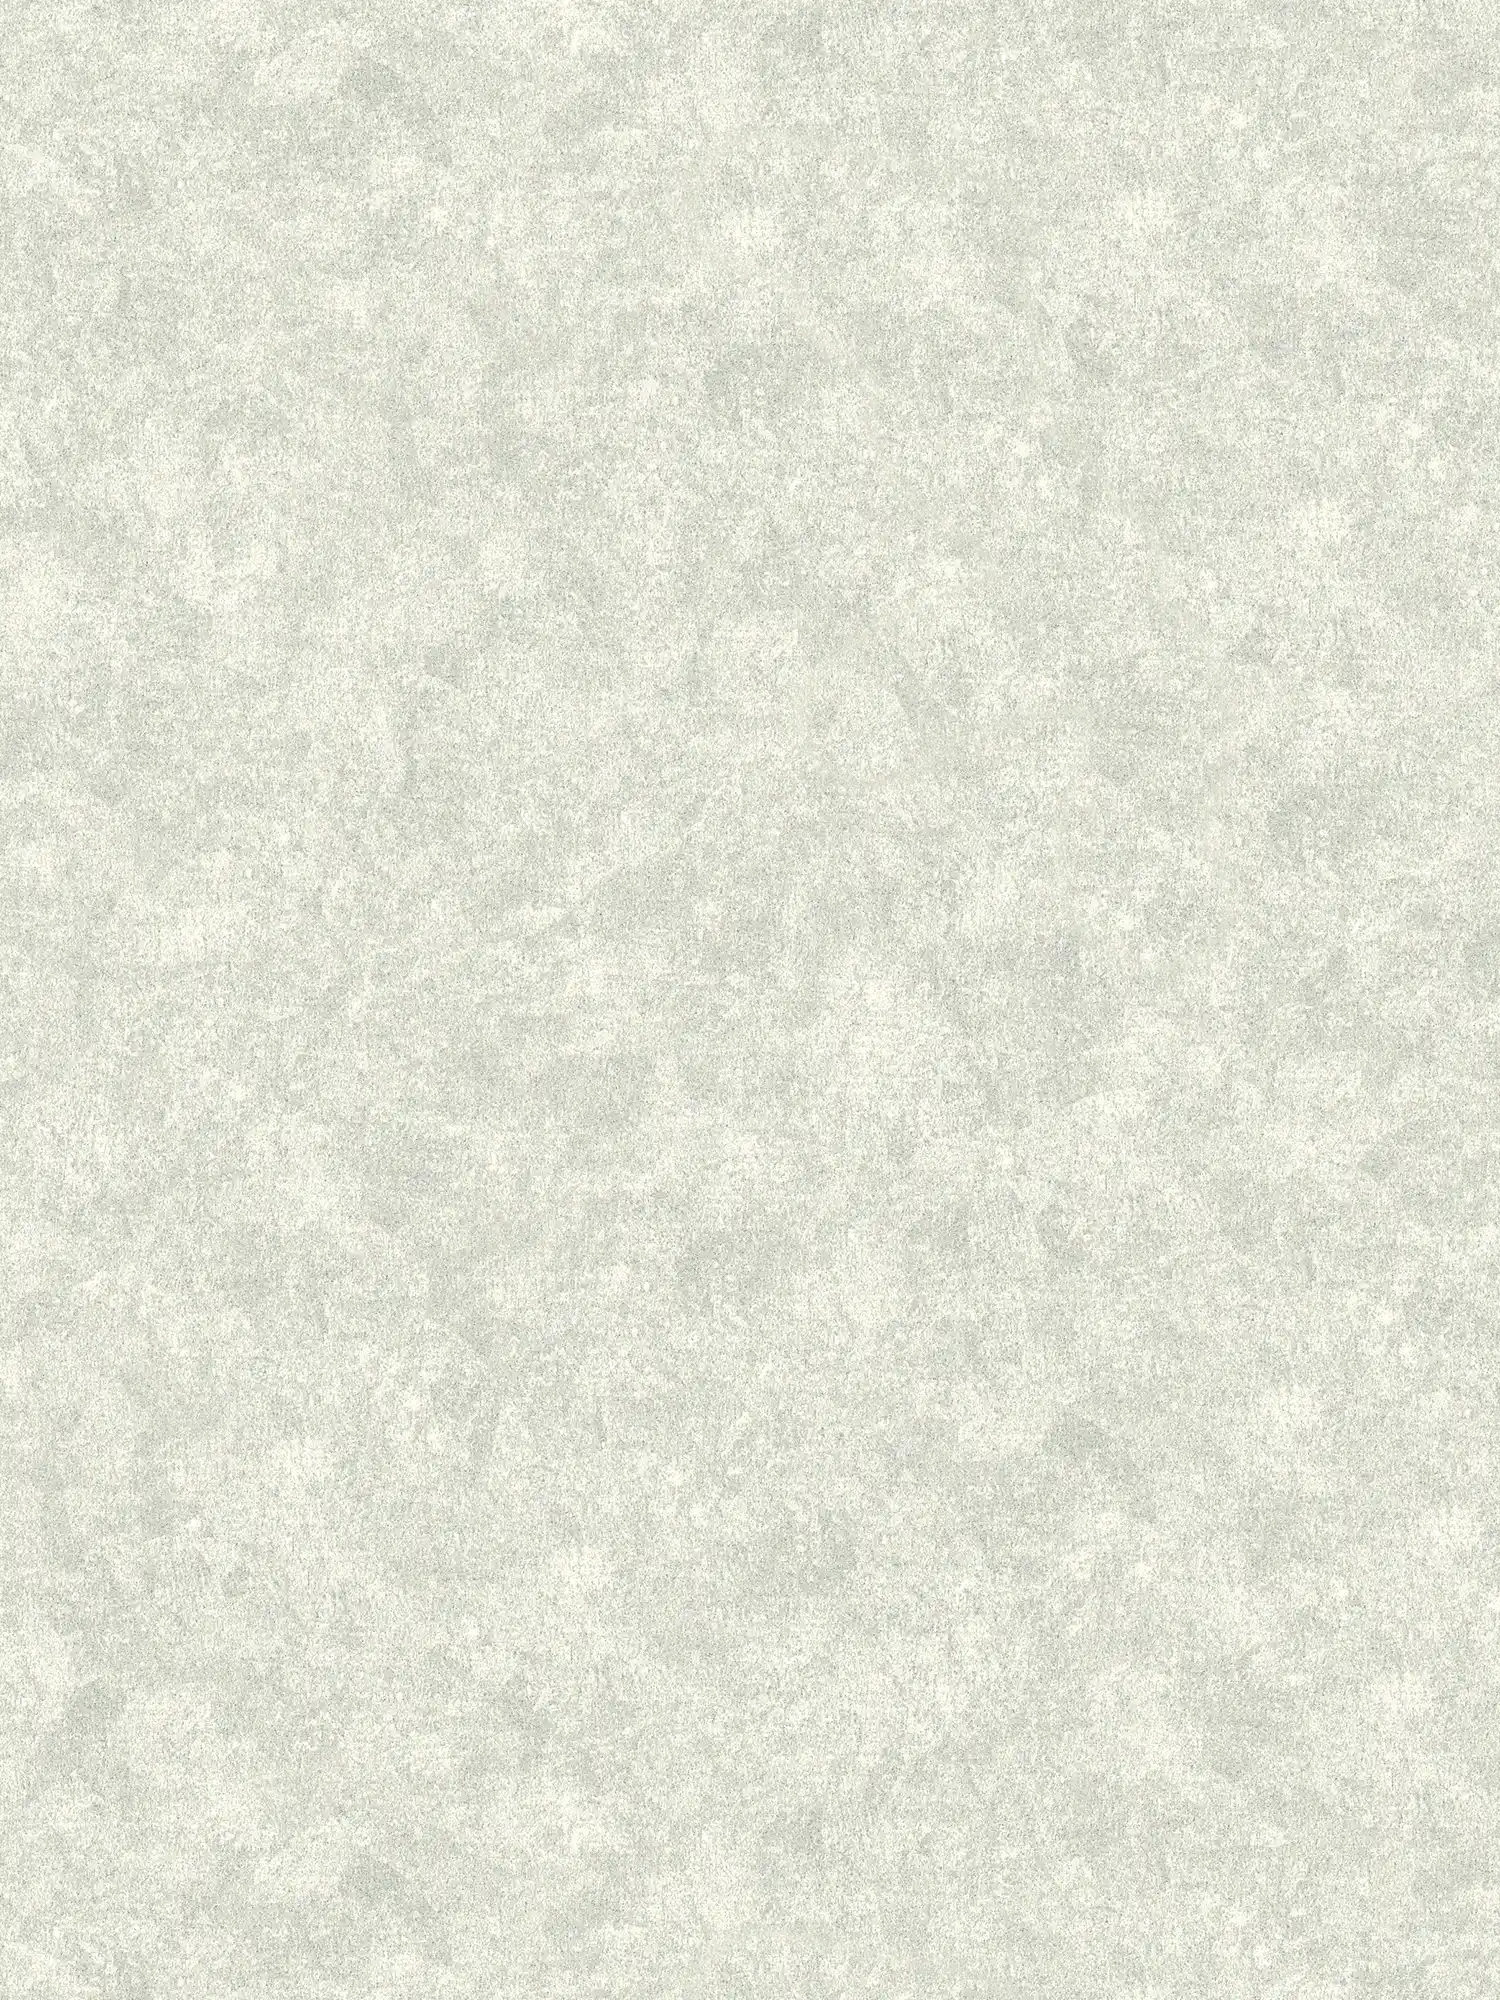 Papier peint uni avec aspect texturé chiné - Gris
